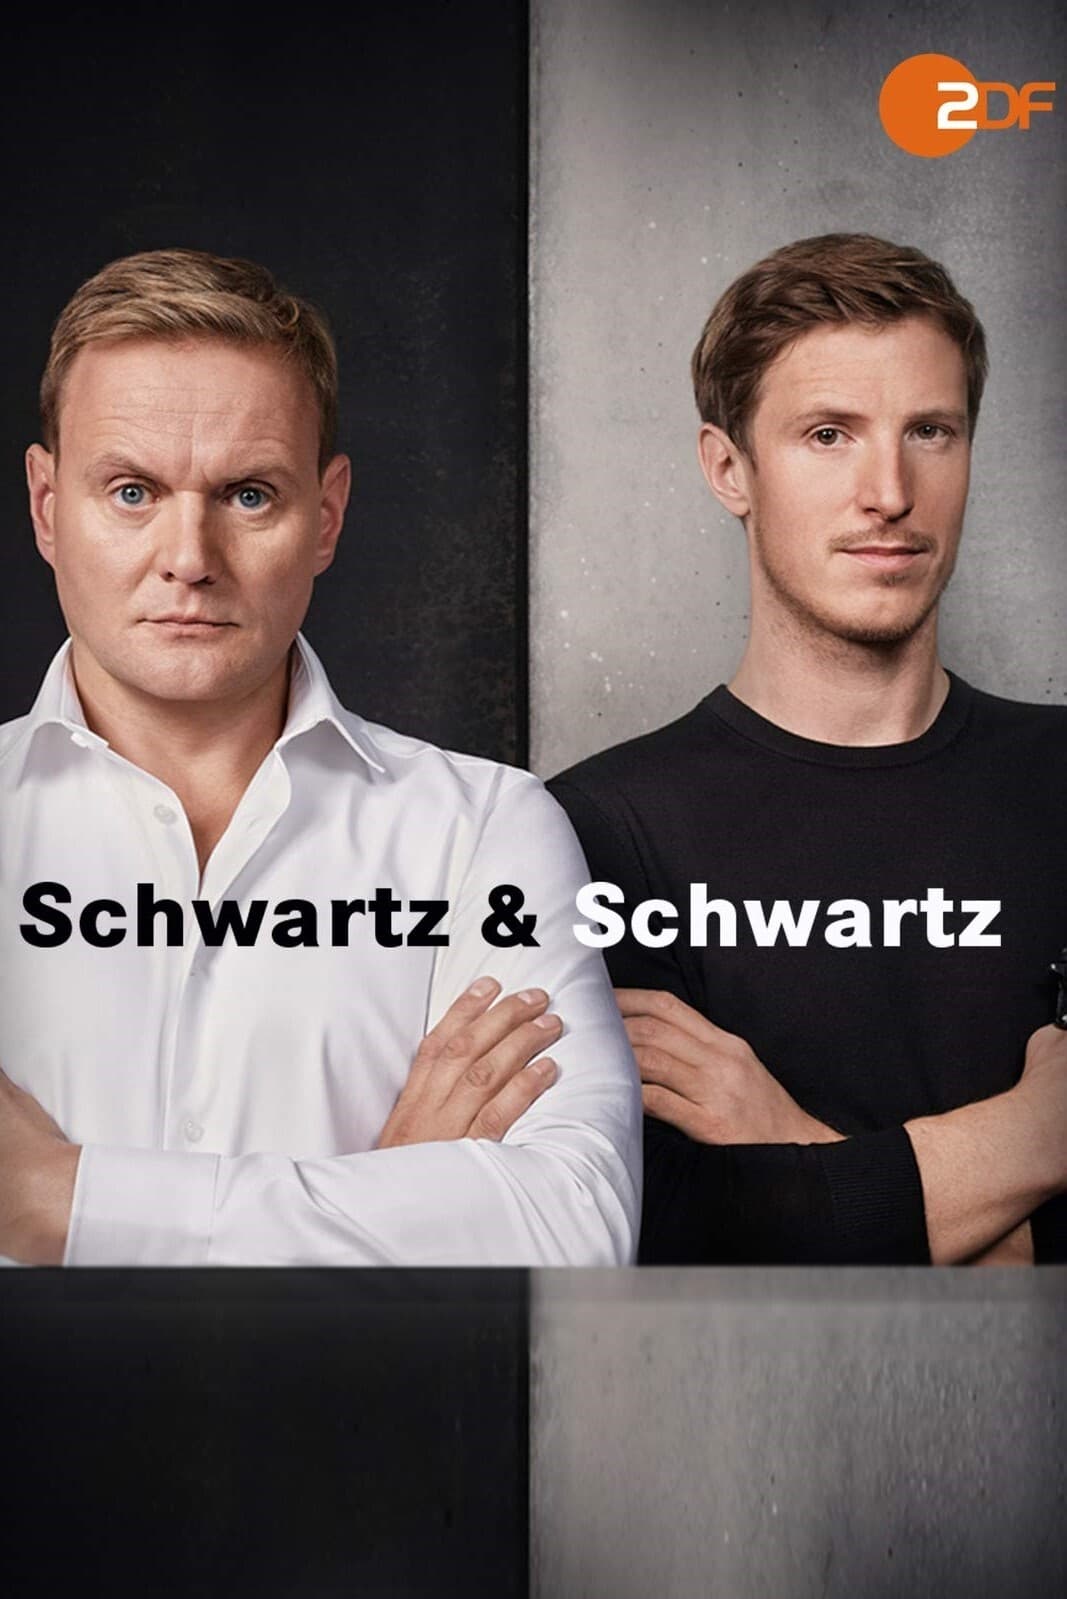 Schwartz & Schwartz TV Shows About Sibling Relationship